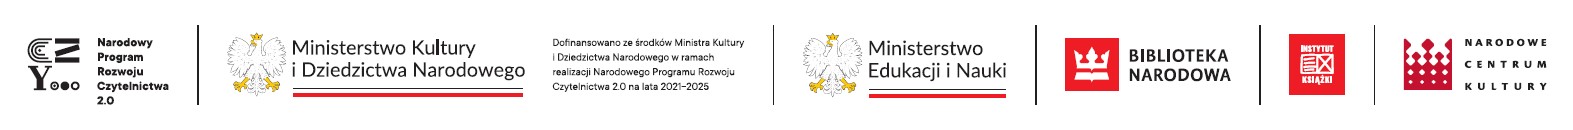 Logotypy od lewej: Narodowy Program Rozwoju Czytelnictwa 2.0, Ministerstwo Kultury i Dziedzictwa Narodowego, Ministerstwo Edukacji i Nauki, Biblioteka Narodowa, Instytut Książki, Narodowe Centrum Kultury